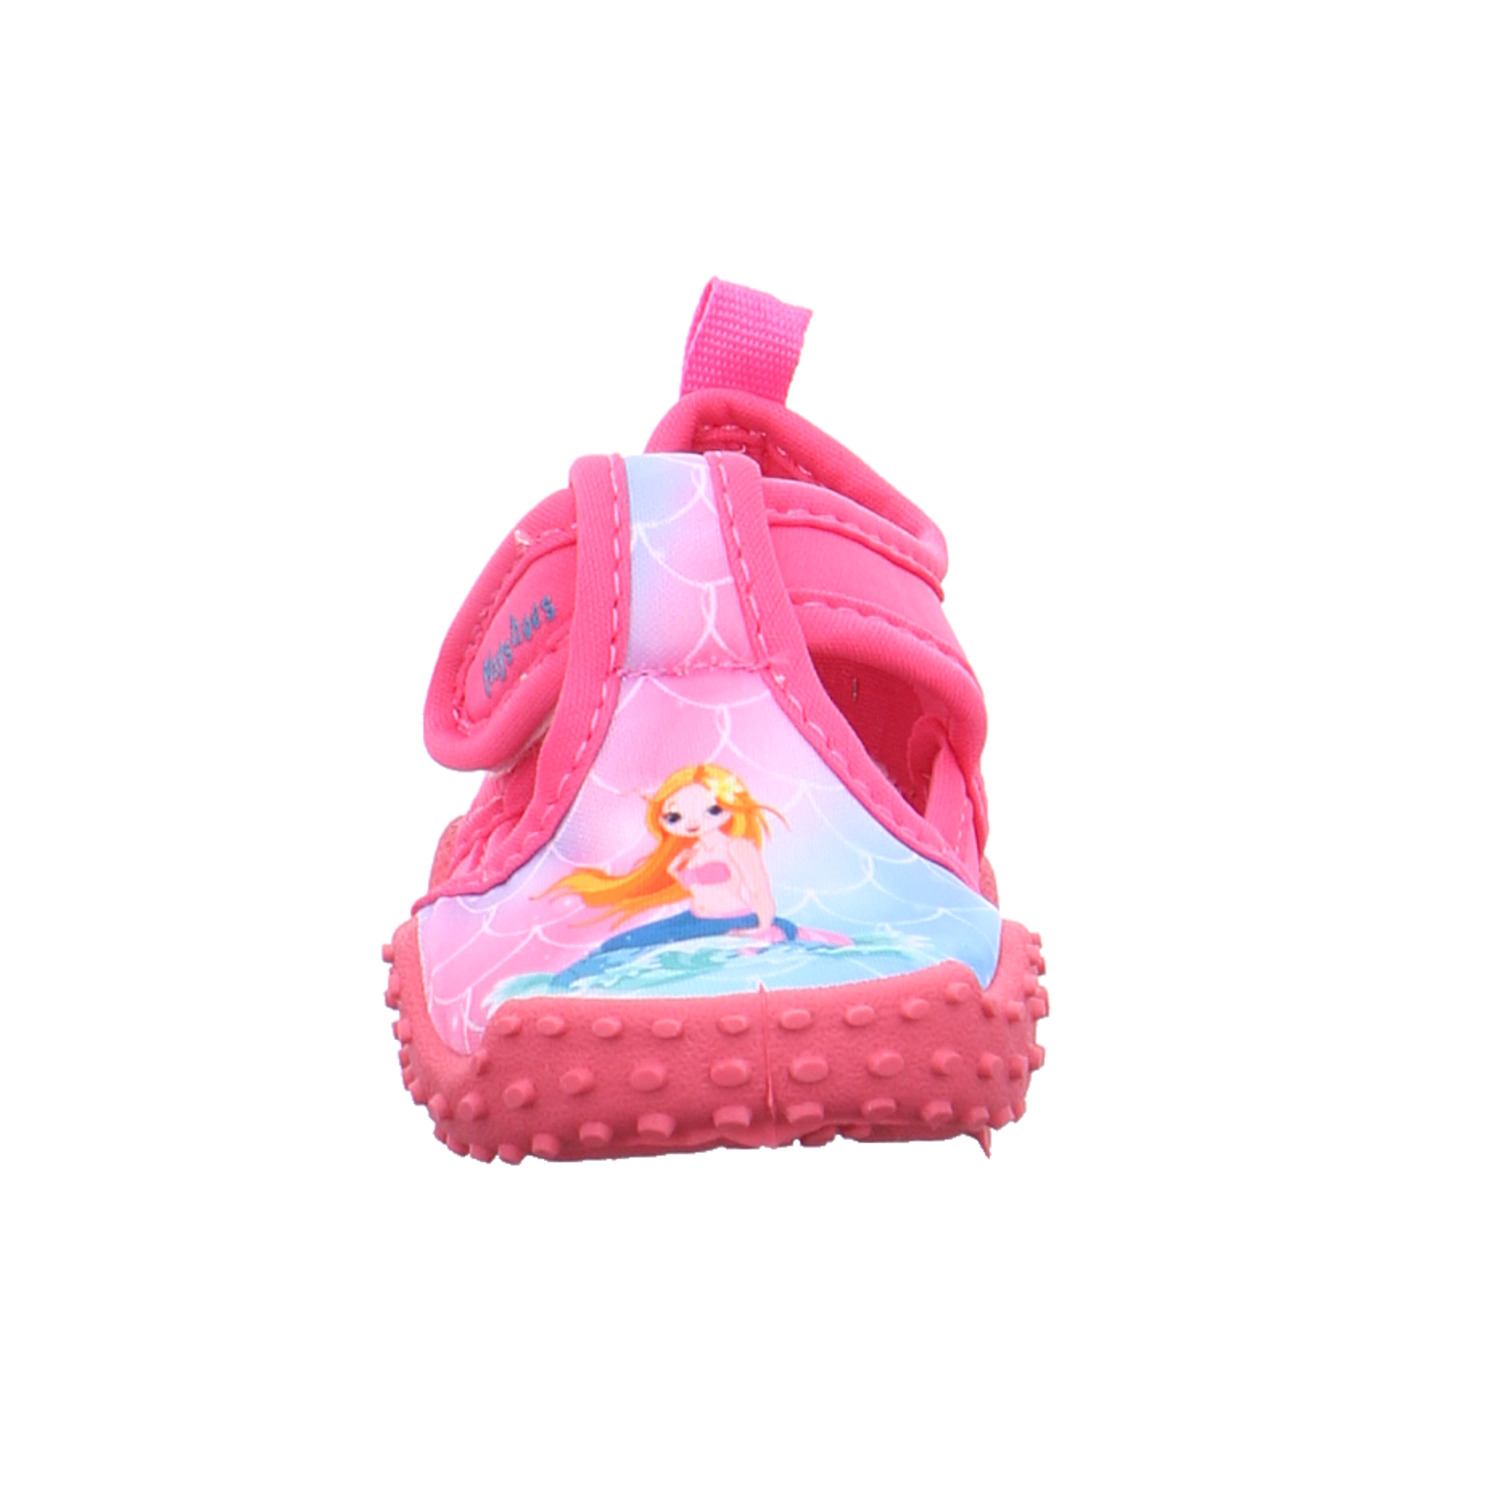 PLAYSHOES Kleinkinder-Sandale wasserfest Pink Textil Badeschuh YB8778